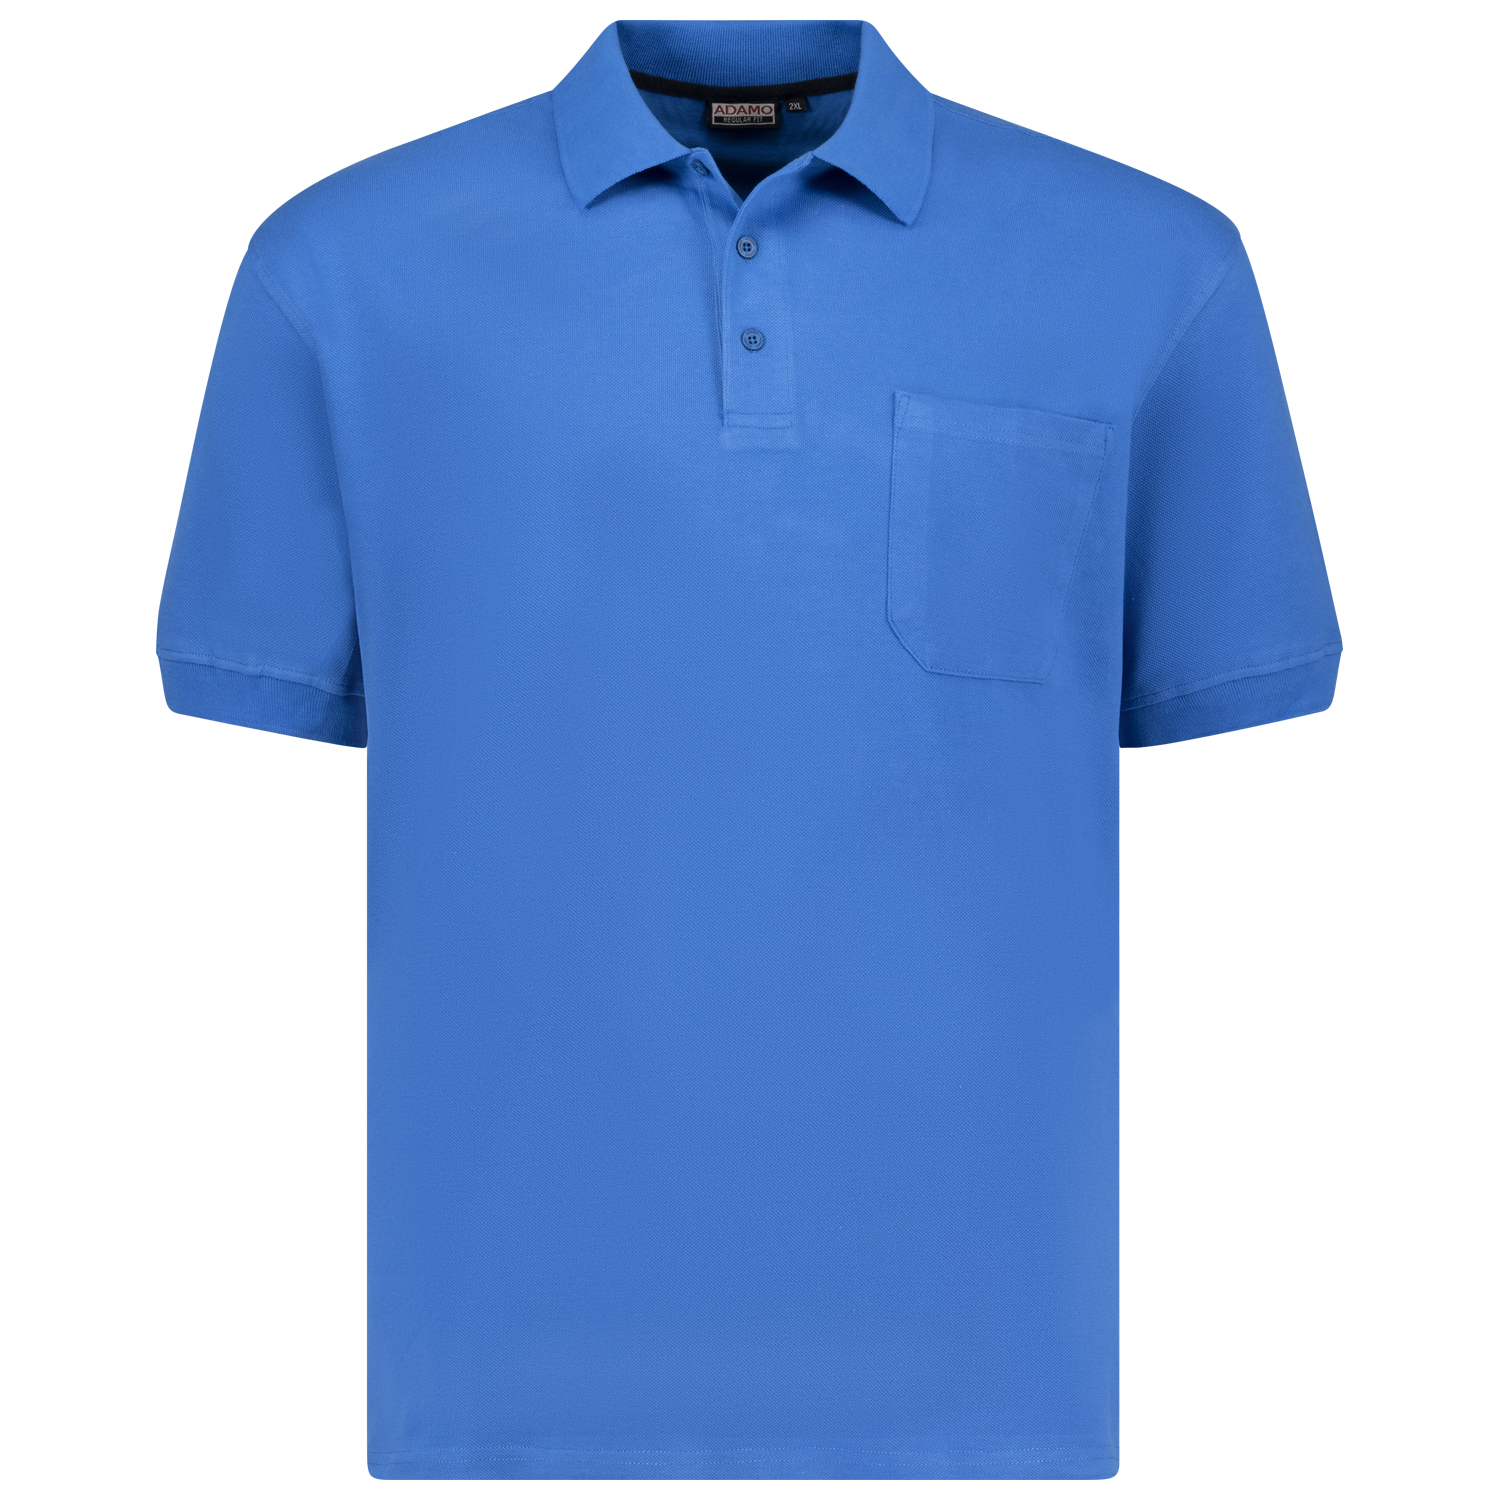 Herren Pique Poloshirt REGULAR FIT kurzarm Serie KENO von Adamo azurblau in Übergrößen 2XL - 10XL